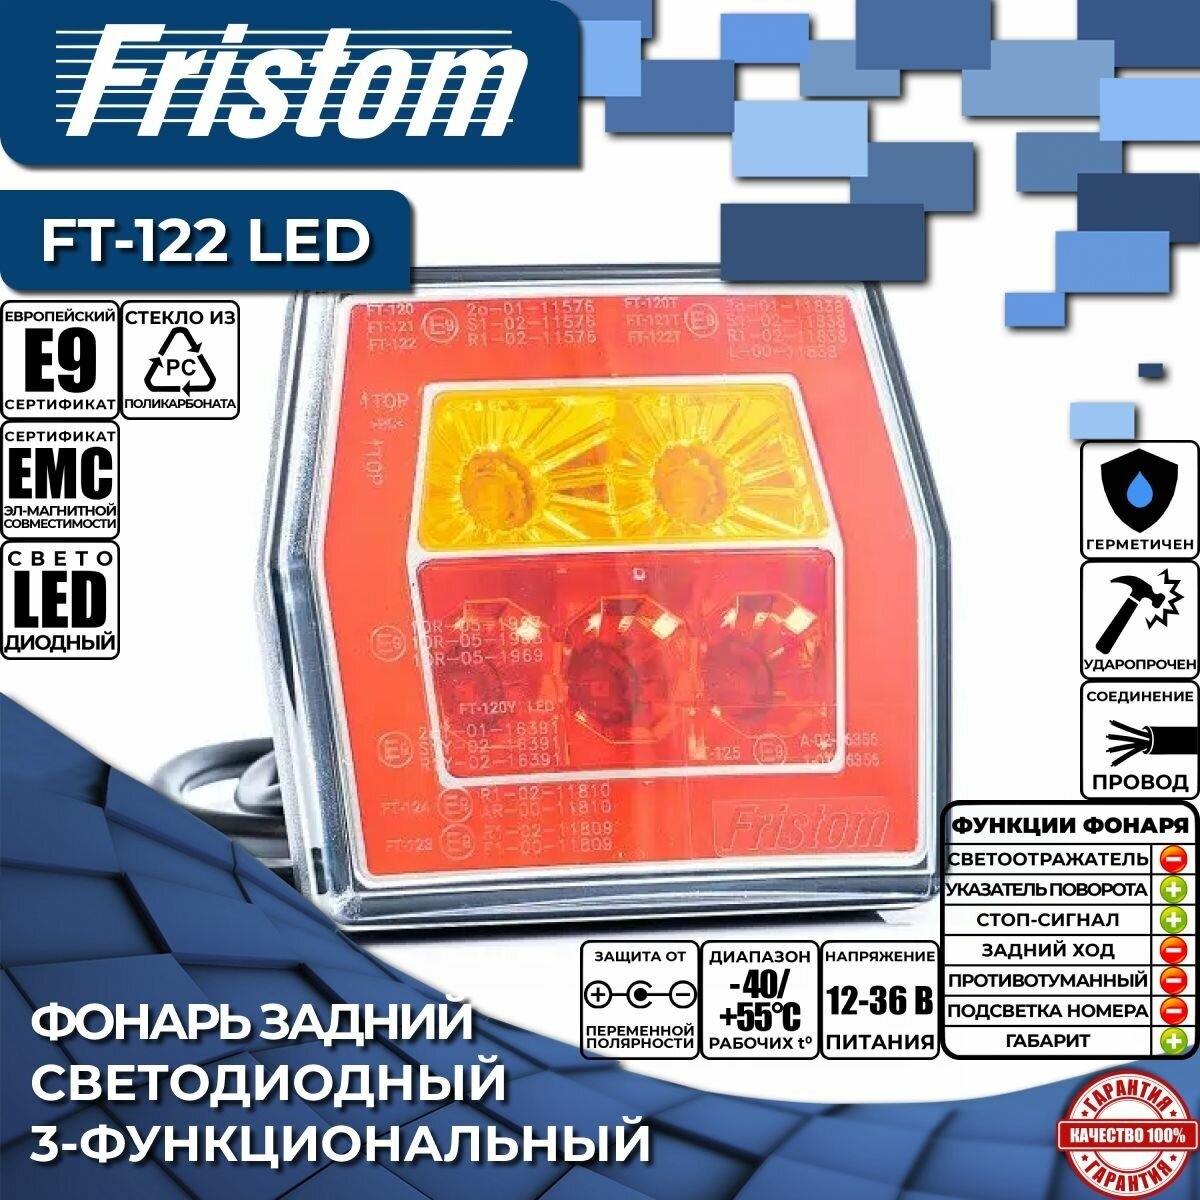 Фонарь задний светодиодный Fristom FT-122 LED 3-функциональный с проводом 1 м (1 шт.)